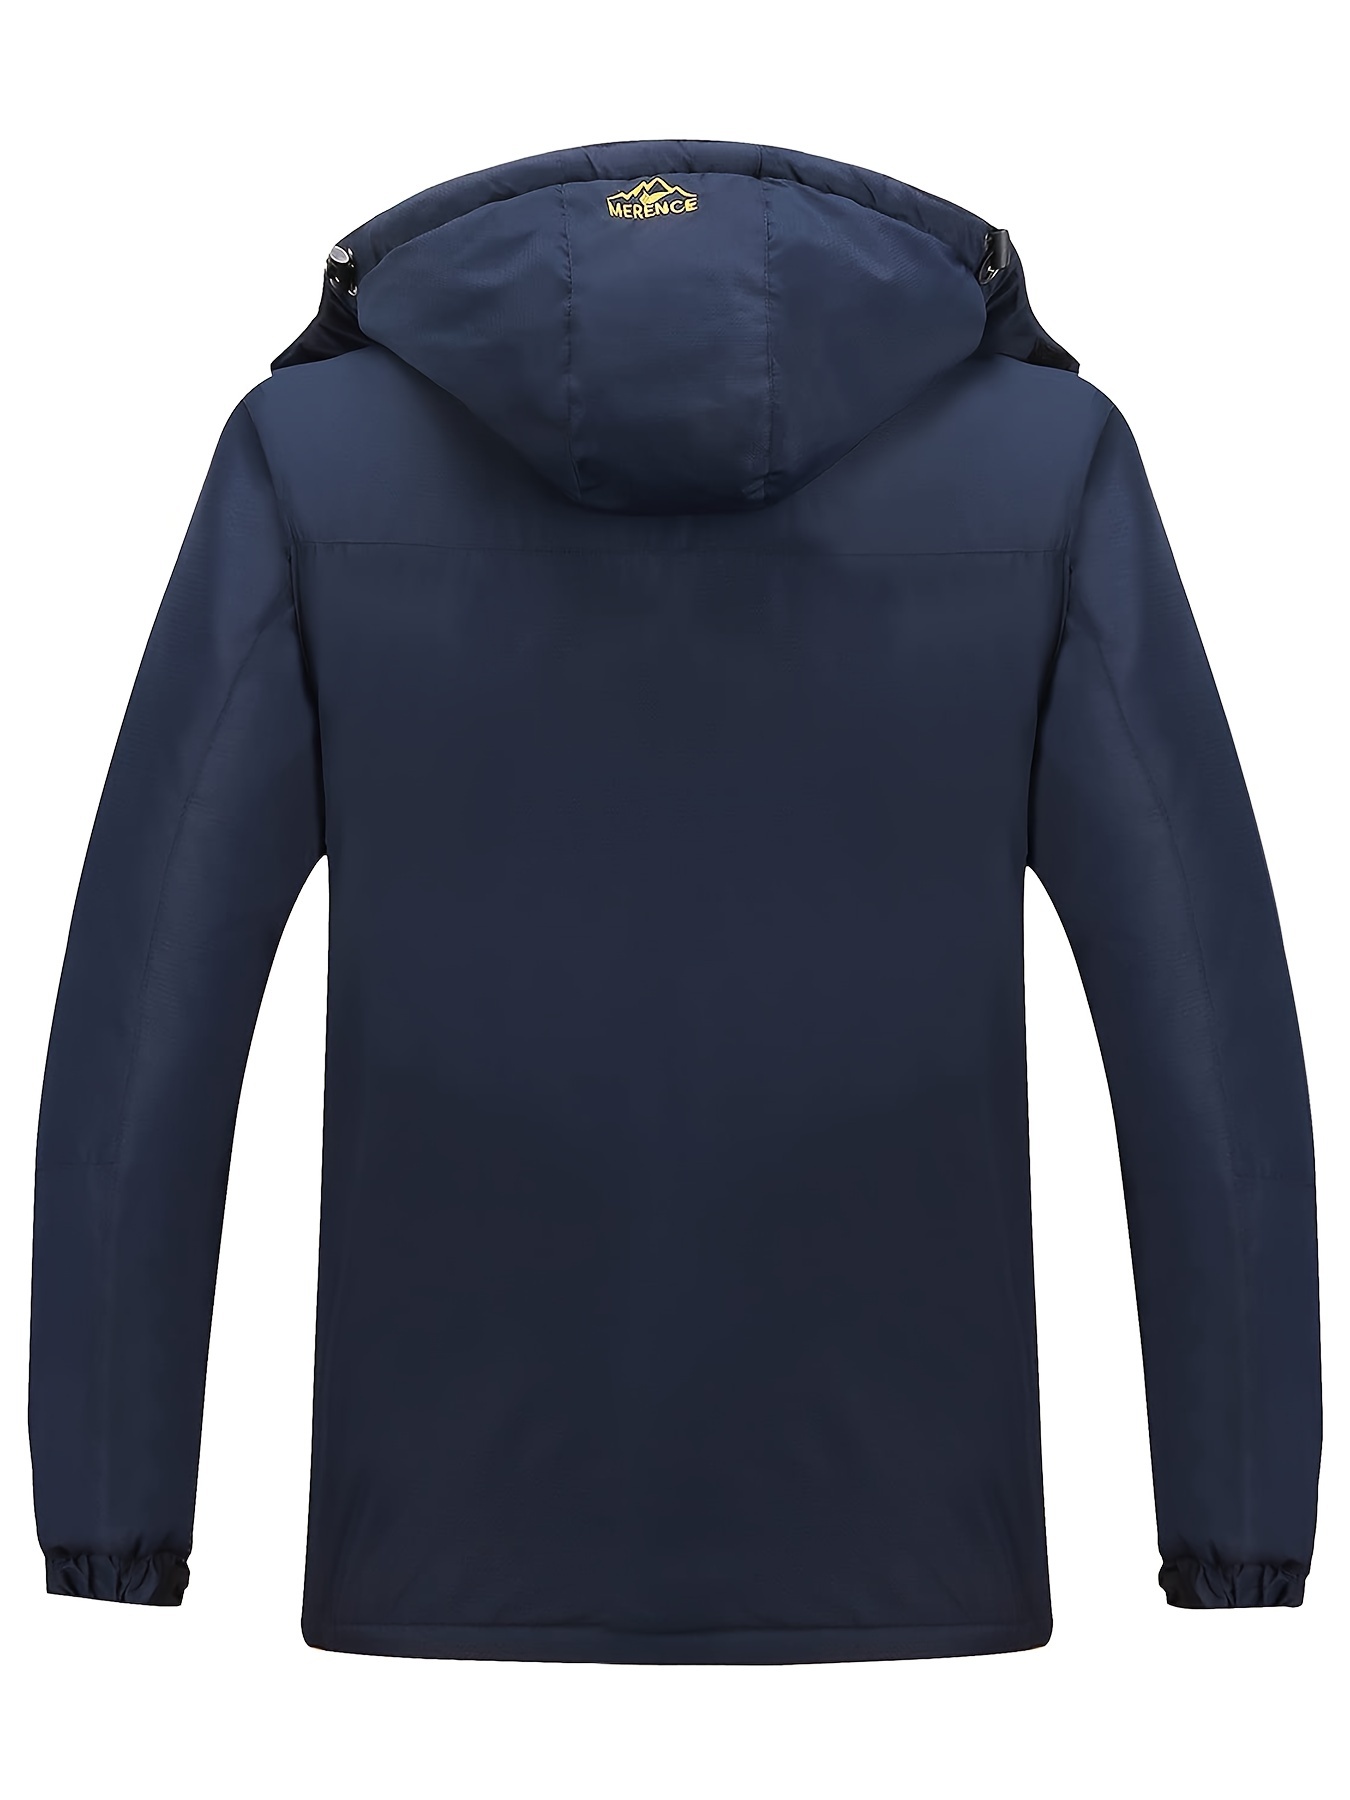 YODETEY Men'S Mountain Waterproof Ski Jacket Windproof Rain Jacket Winter  Warm Snow Coat with Removable Hood Black 14(XXXL) 